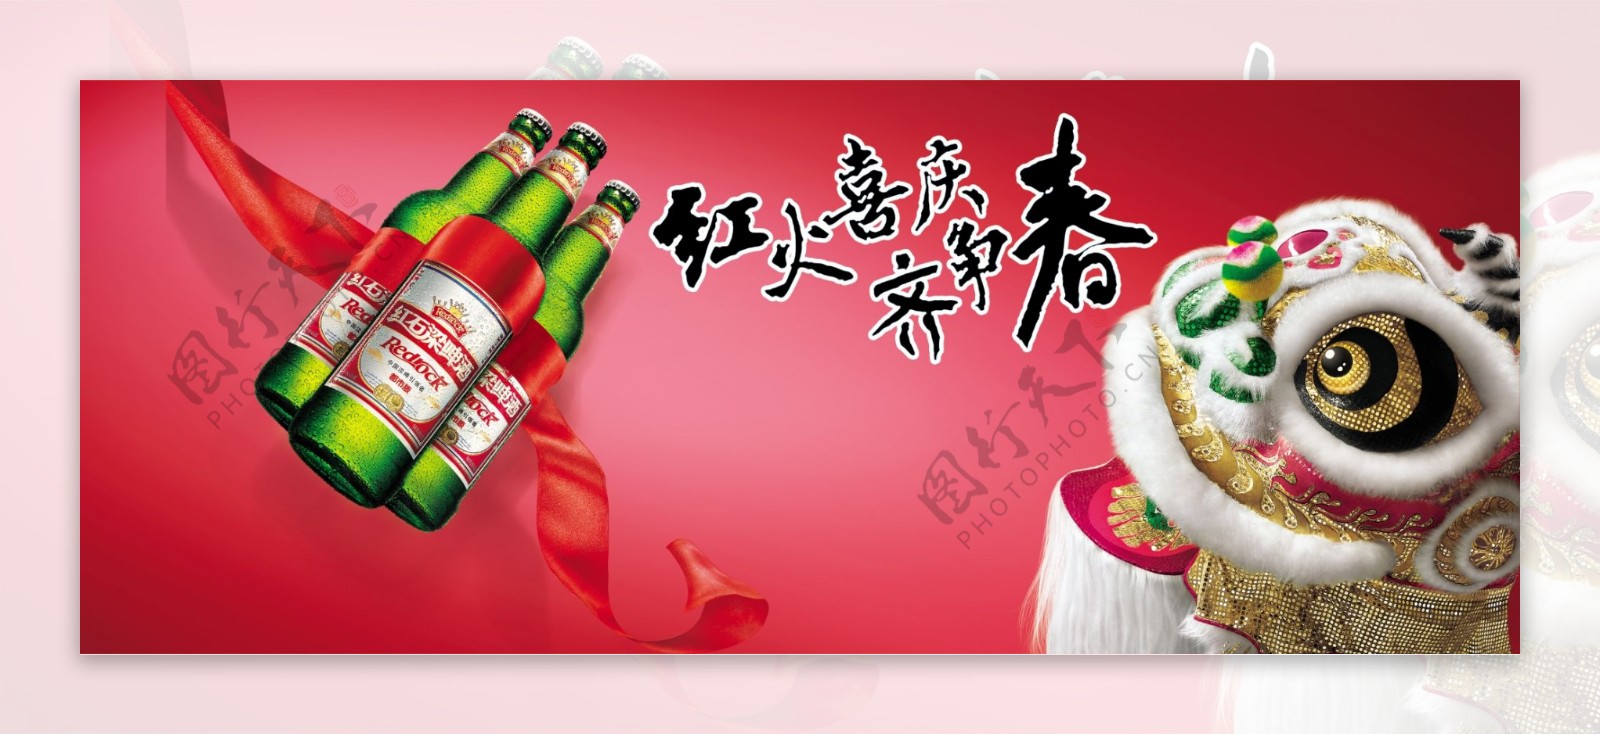 红石梁啤酒广告图片